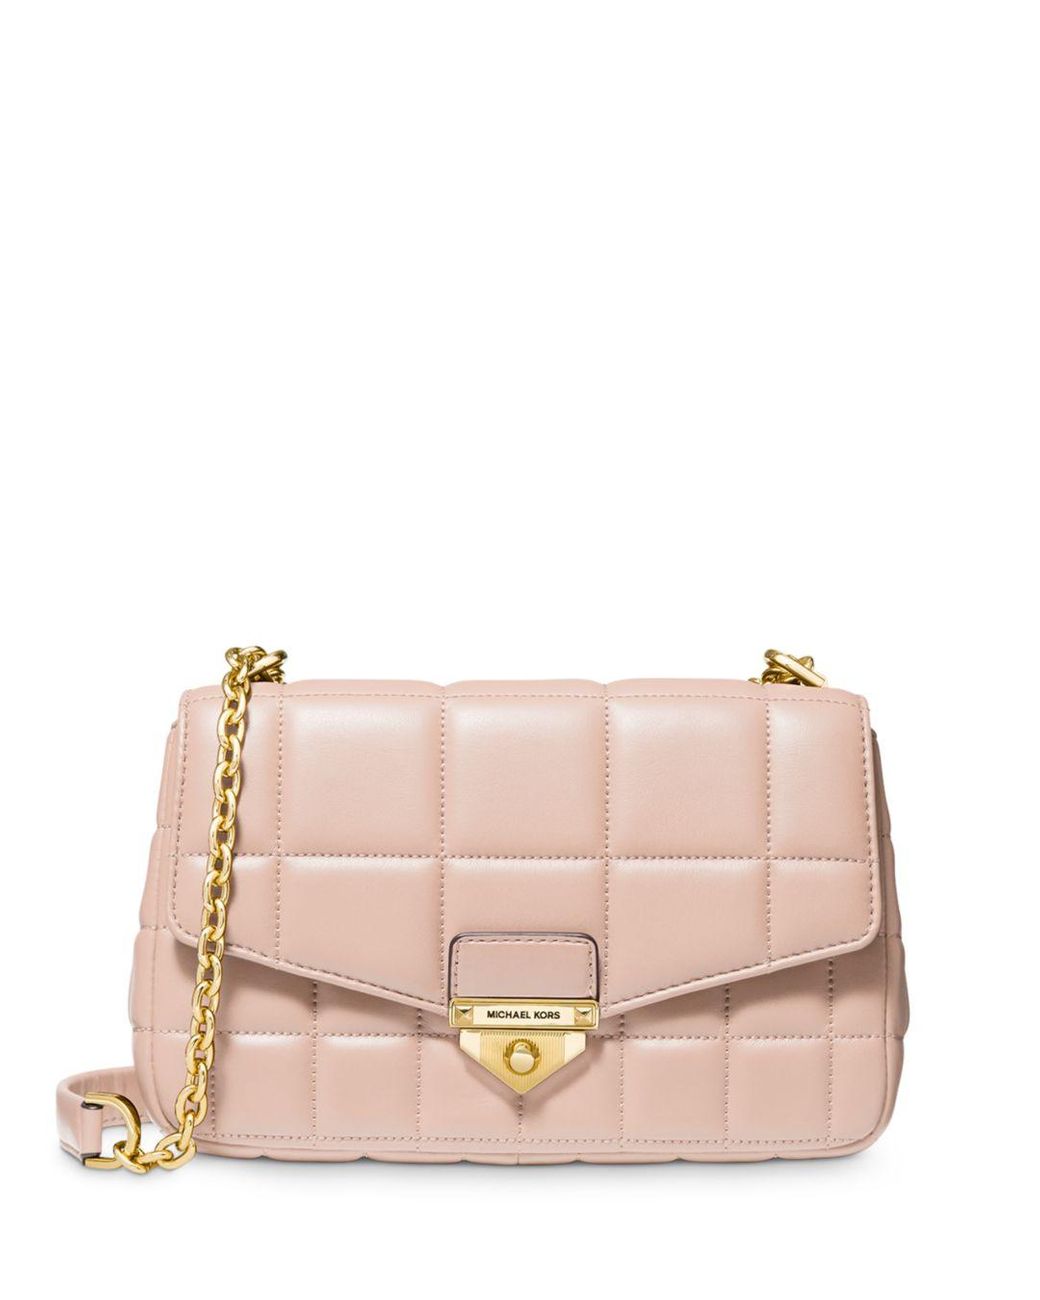 MICHAEL Michael Kors Soho Large Leather Shoulder Bag in Soft Pink (Pink ...